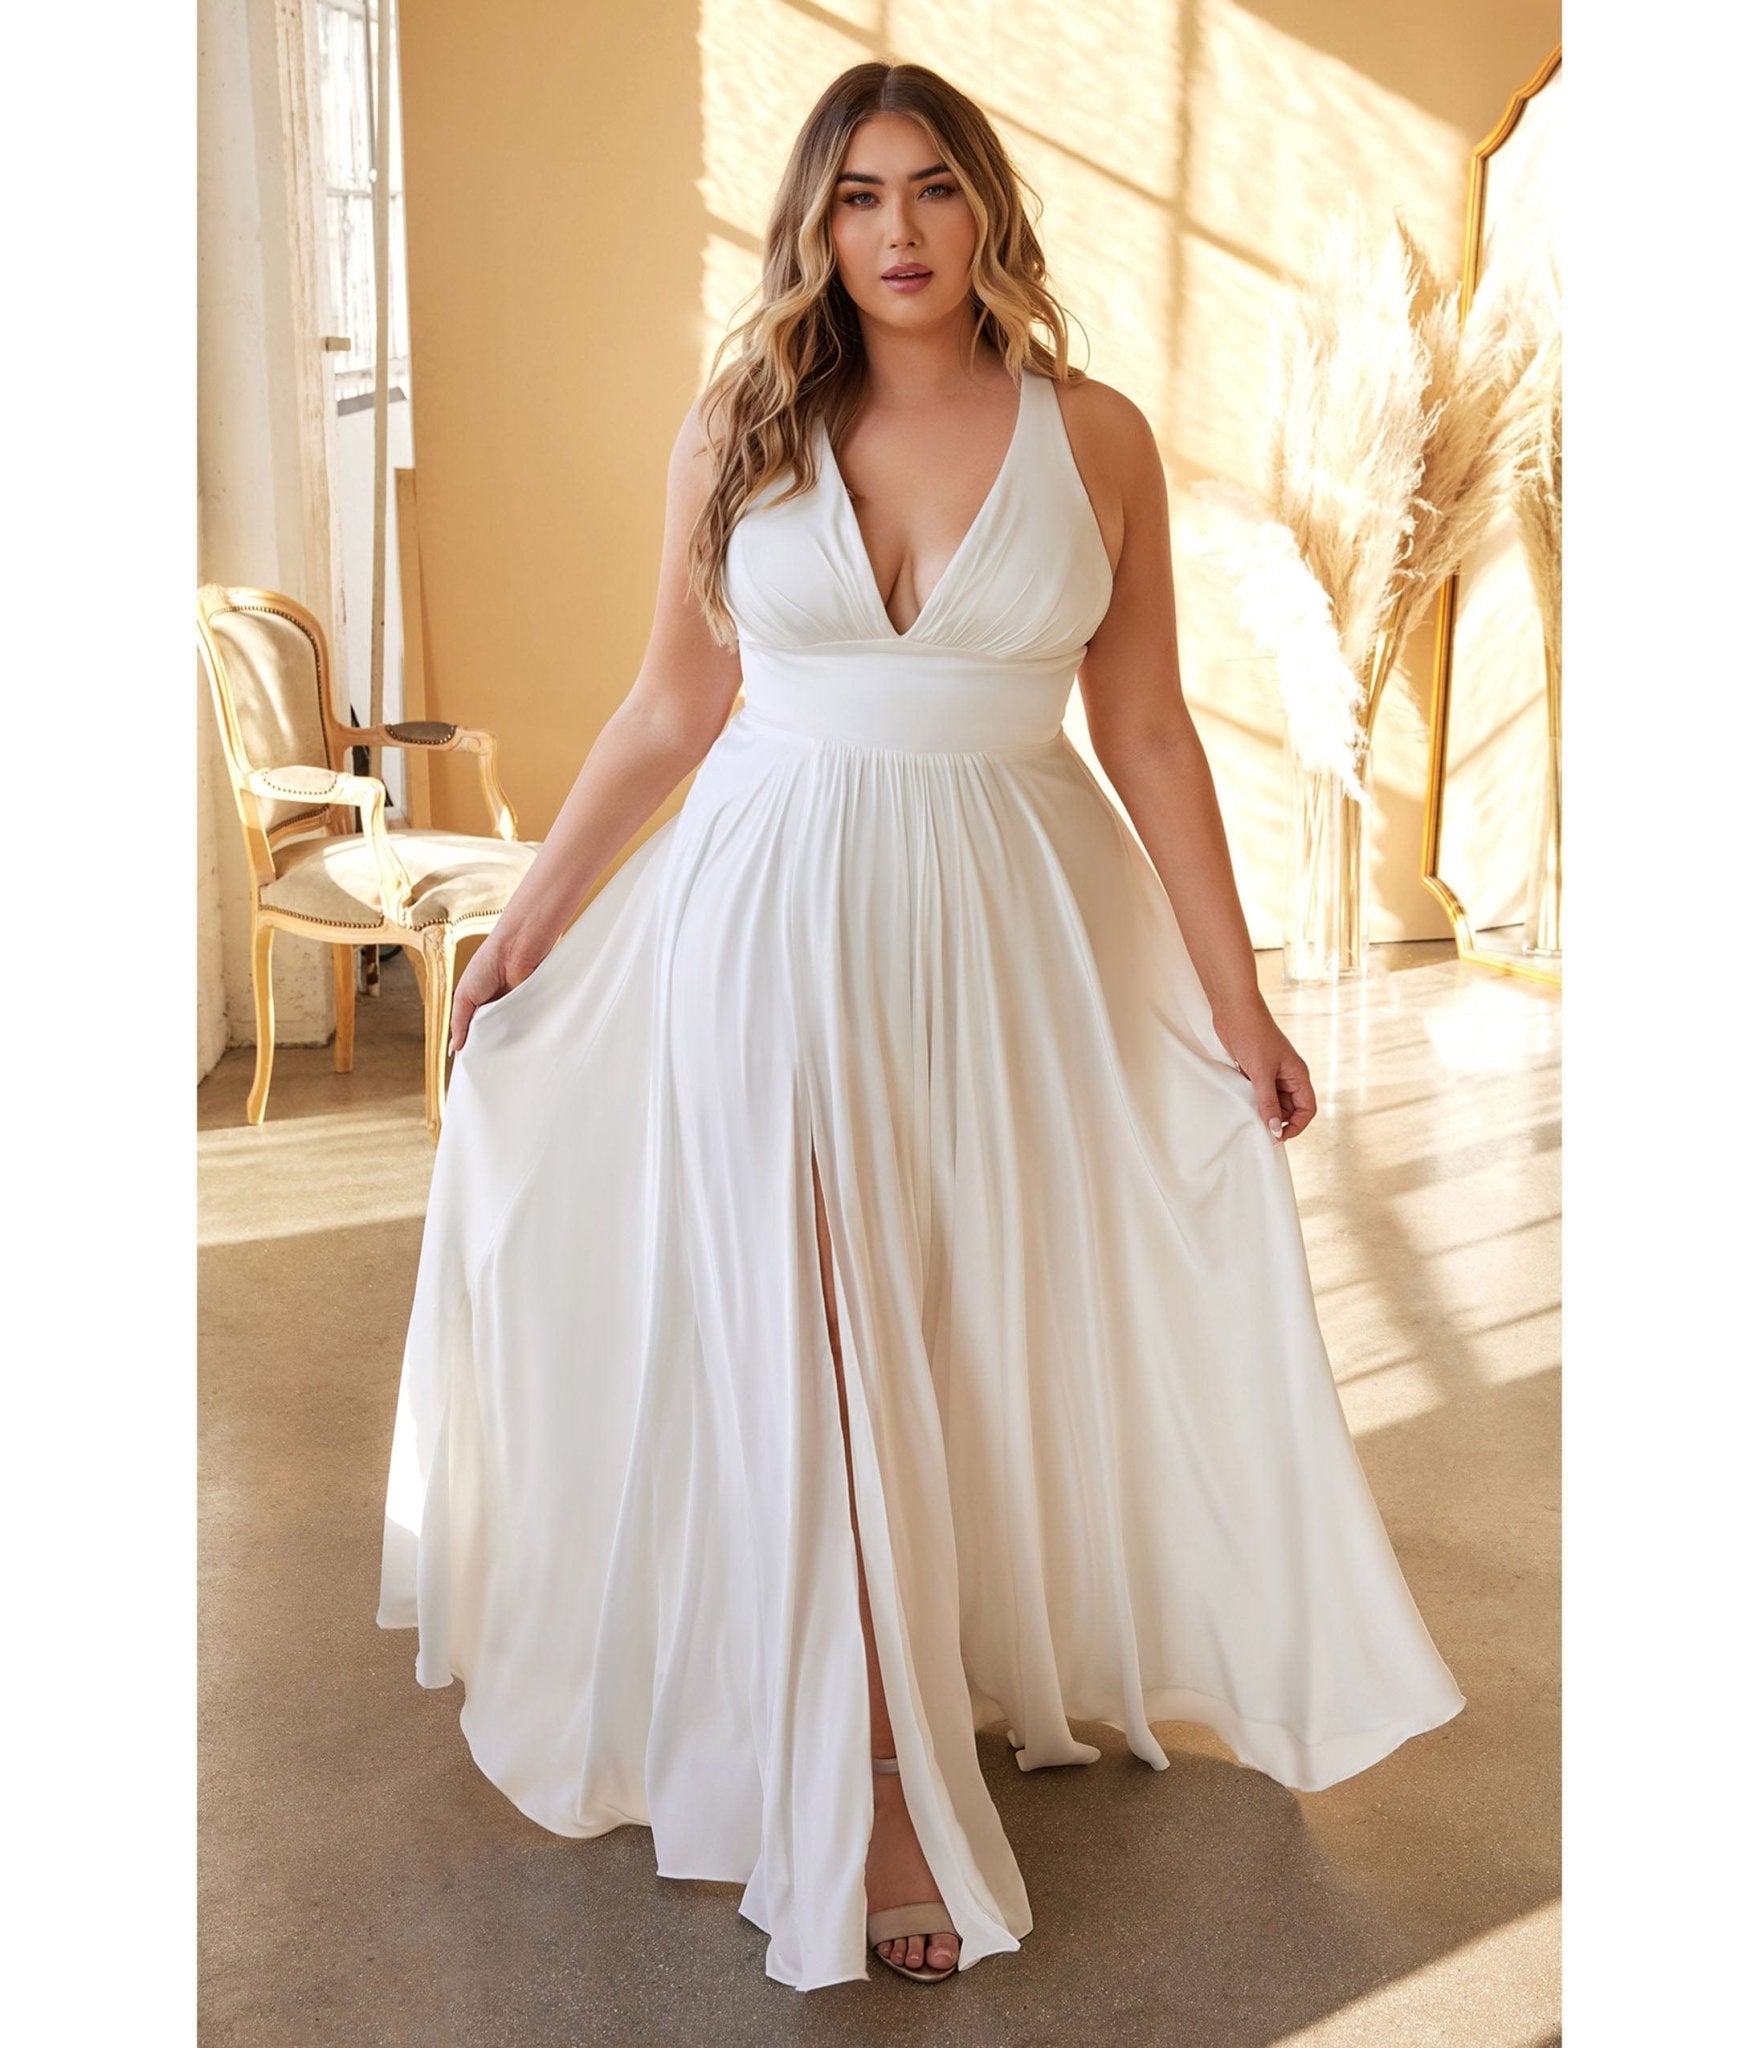 https://www.unique-vintage.com/cdn/shop/products/plus-size-white-satin-a-line-bridal-gown-911227.jpg?v=1703096874&width=1920